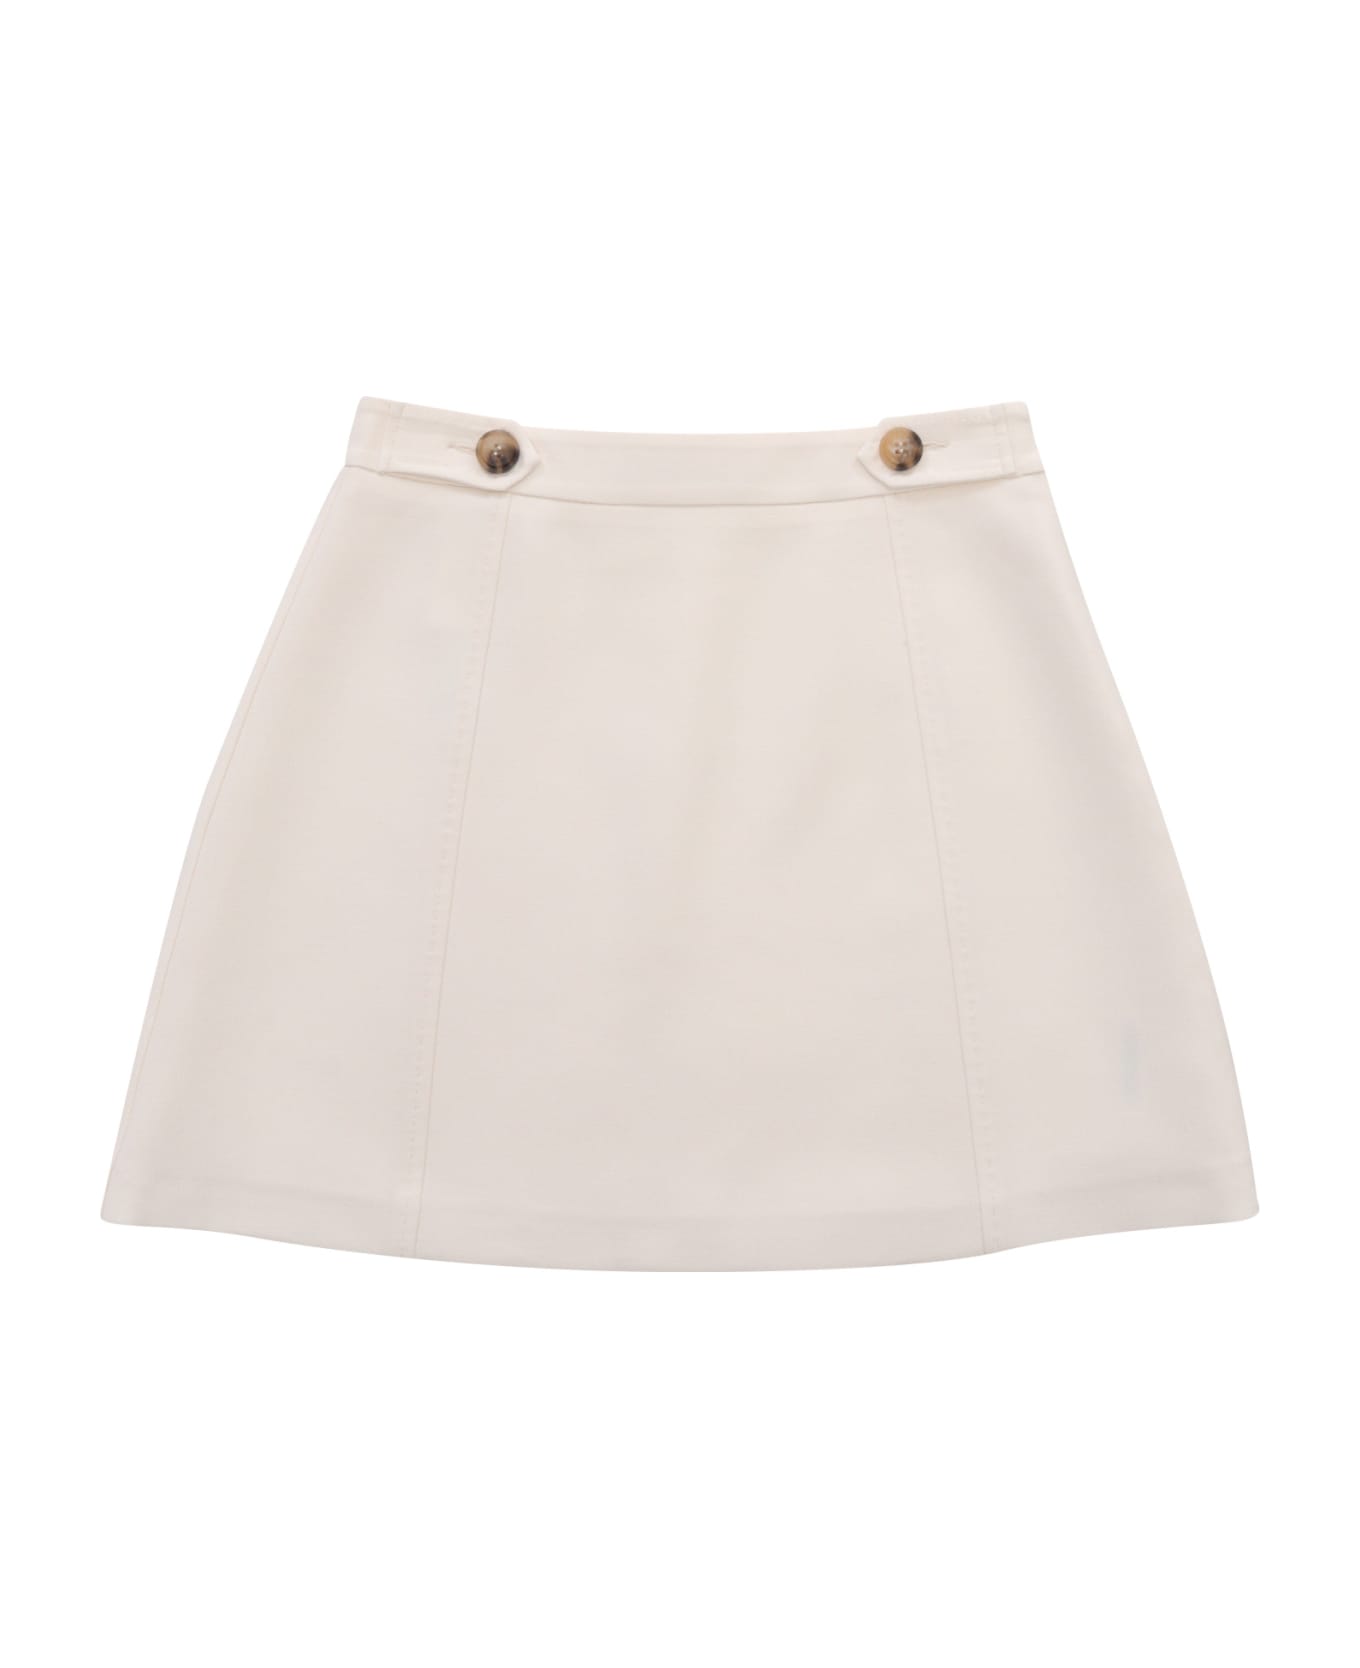 Max&Co. White Mini Skirt - WHITE ボトムス